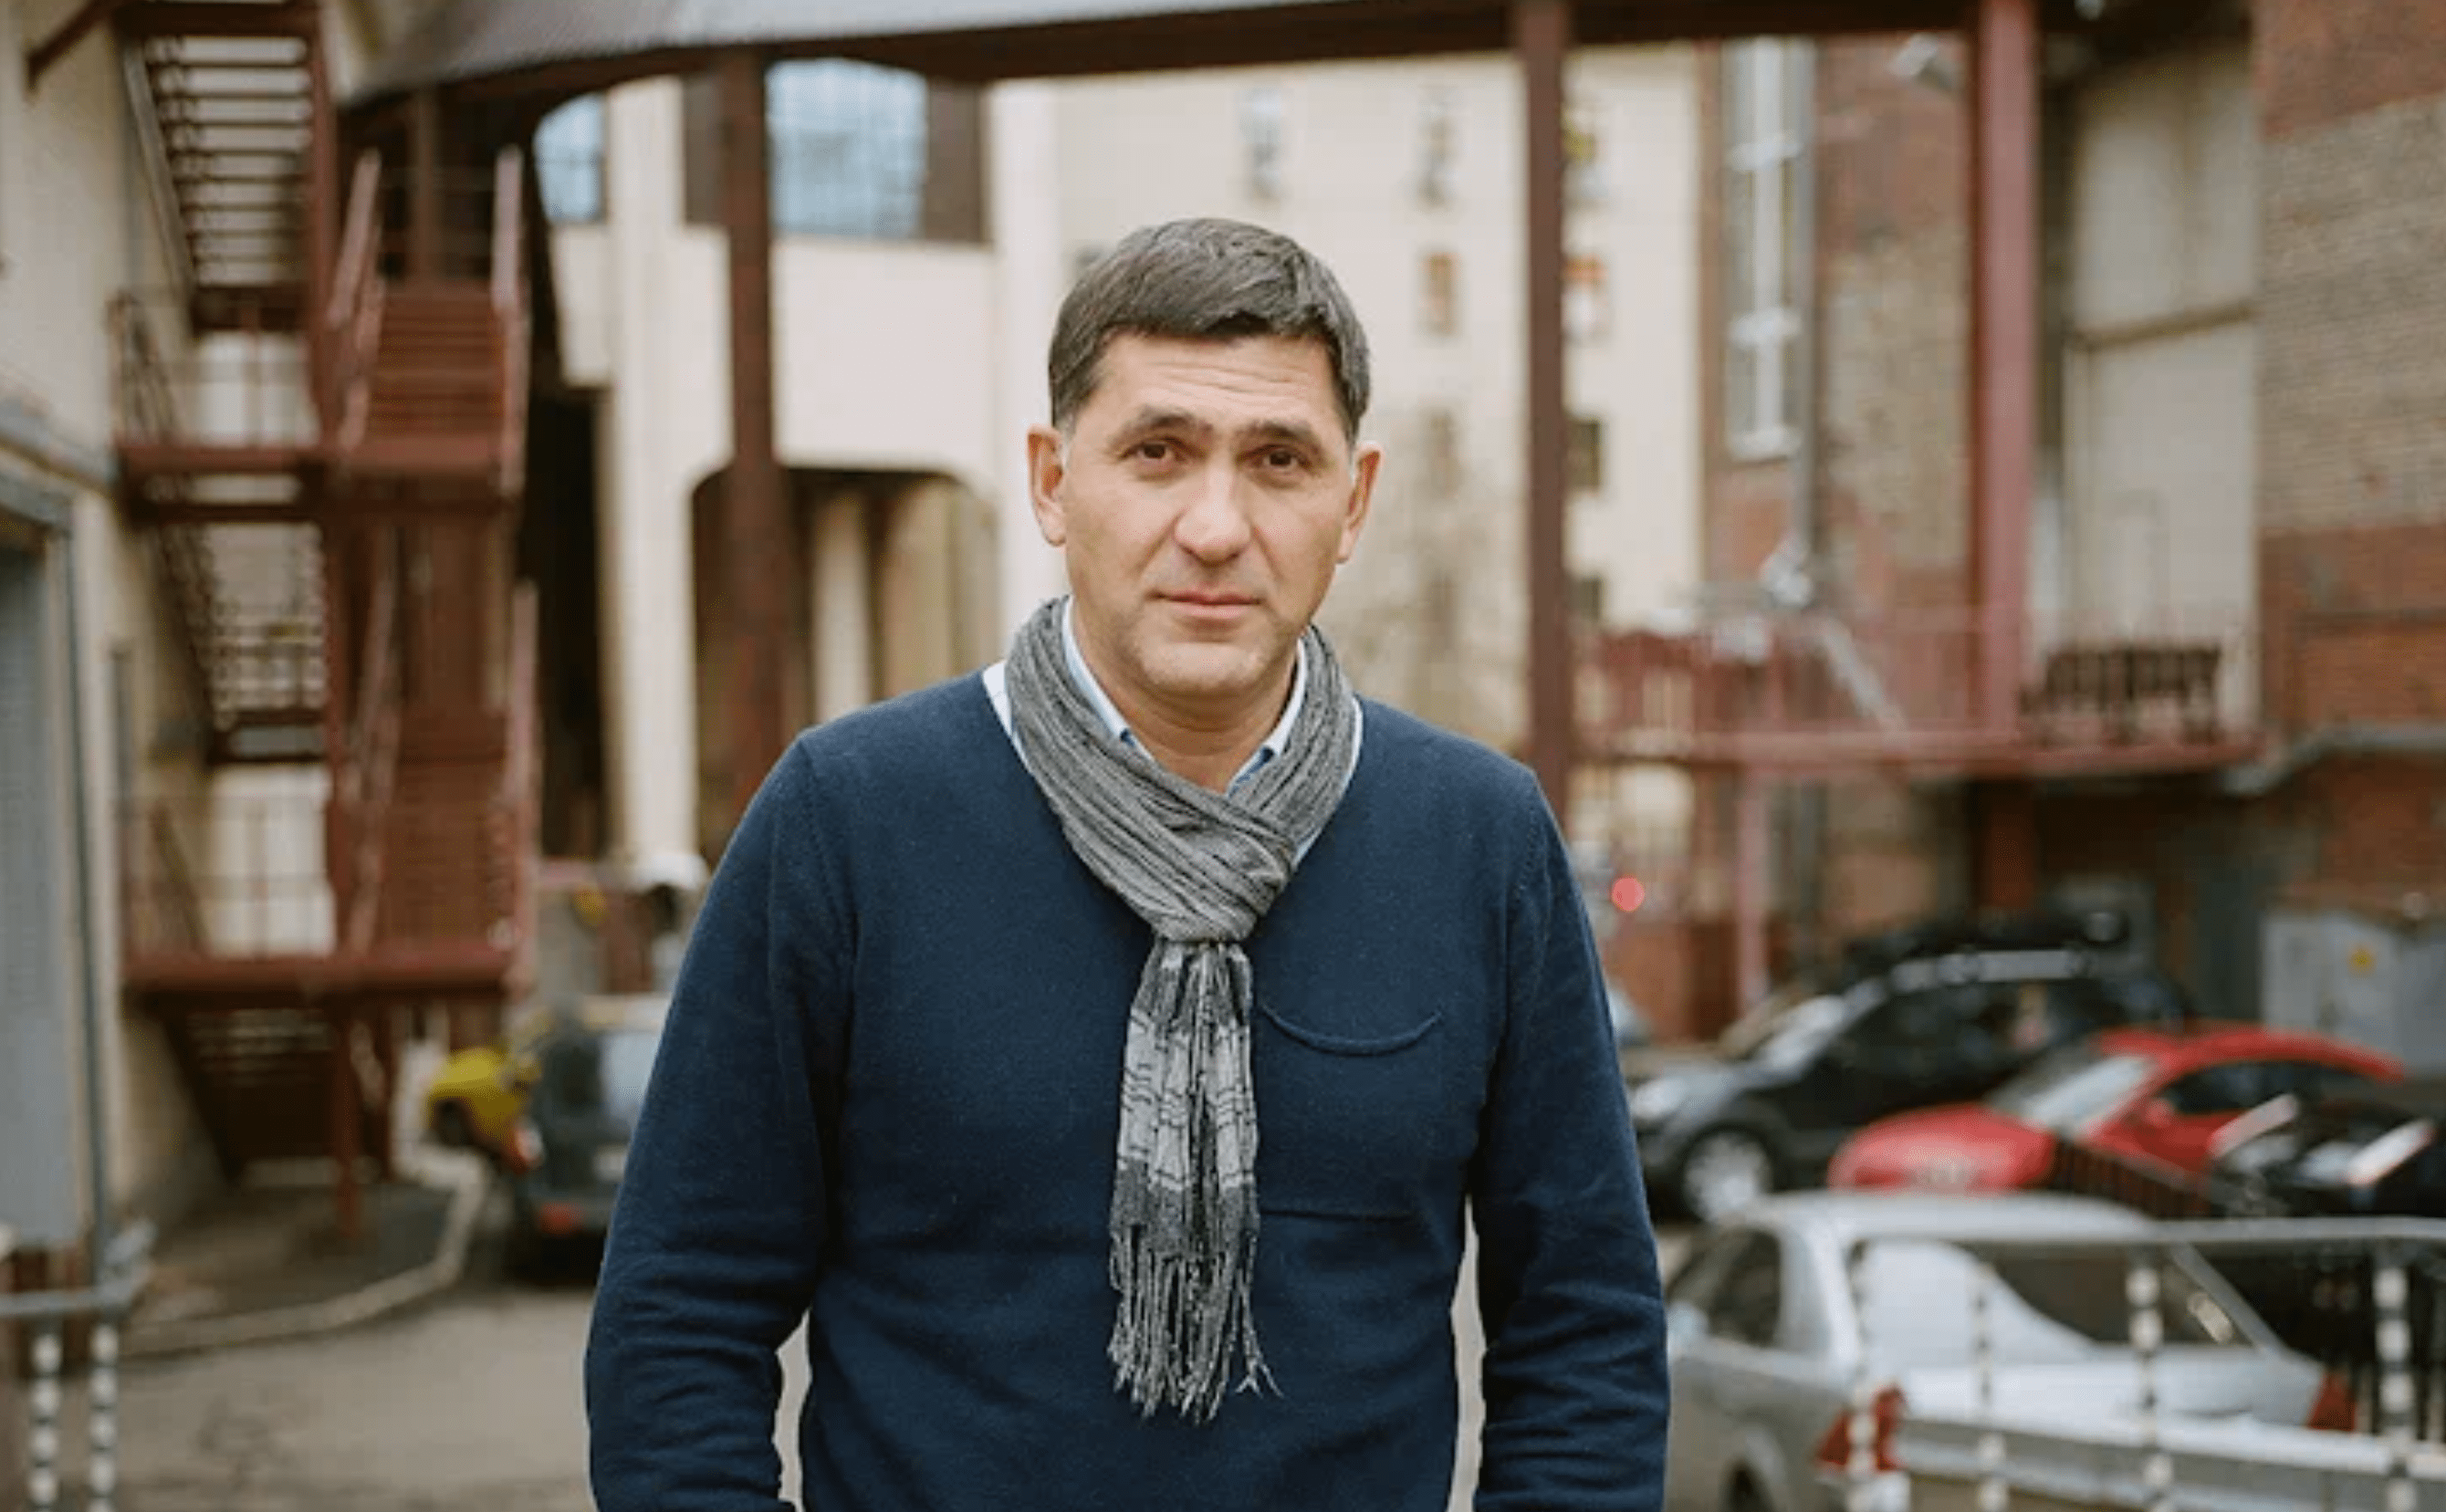 Губернатор Ярославской области подтвердил гибель актера Сергея Пускепалиса